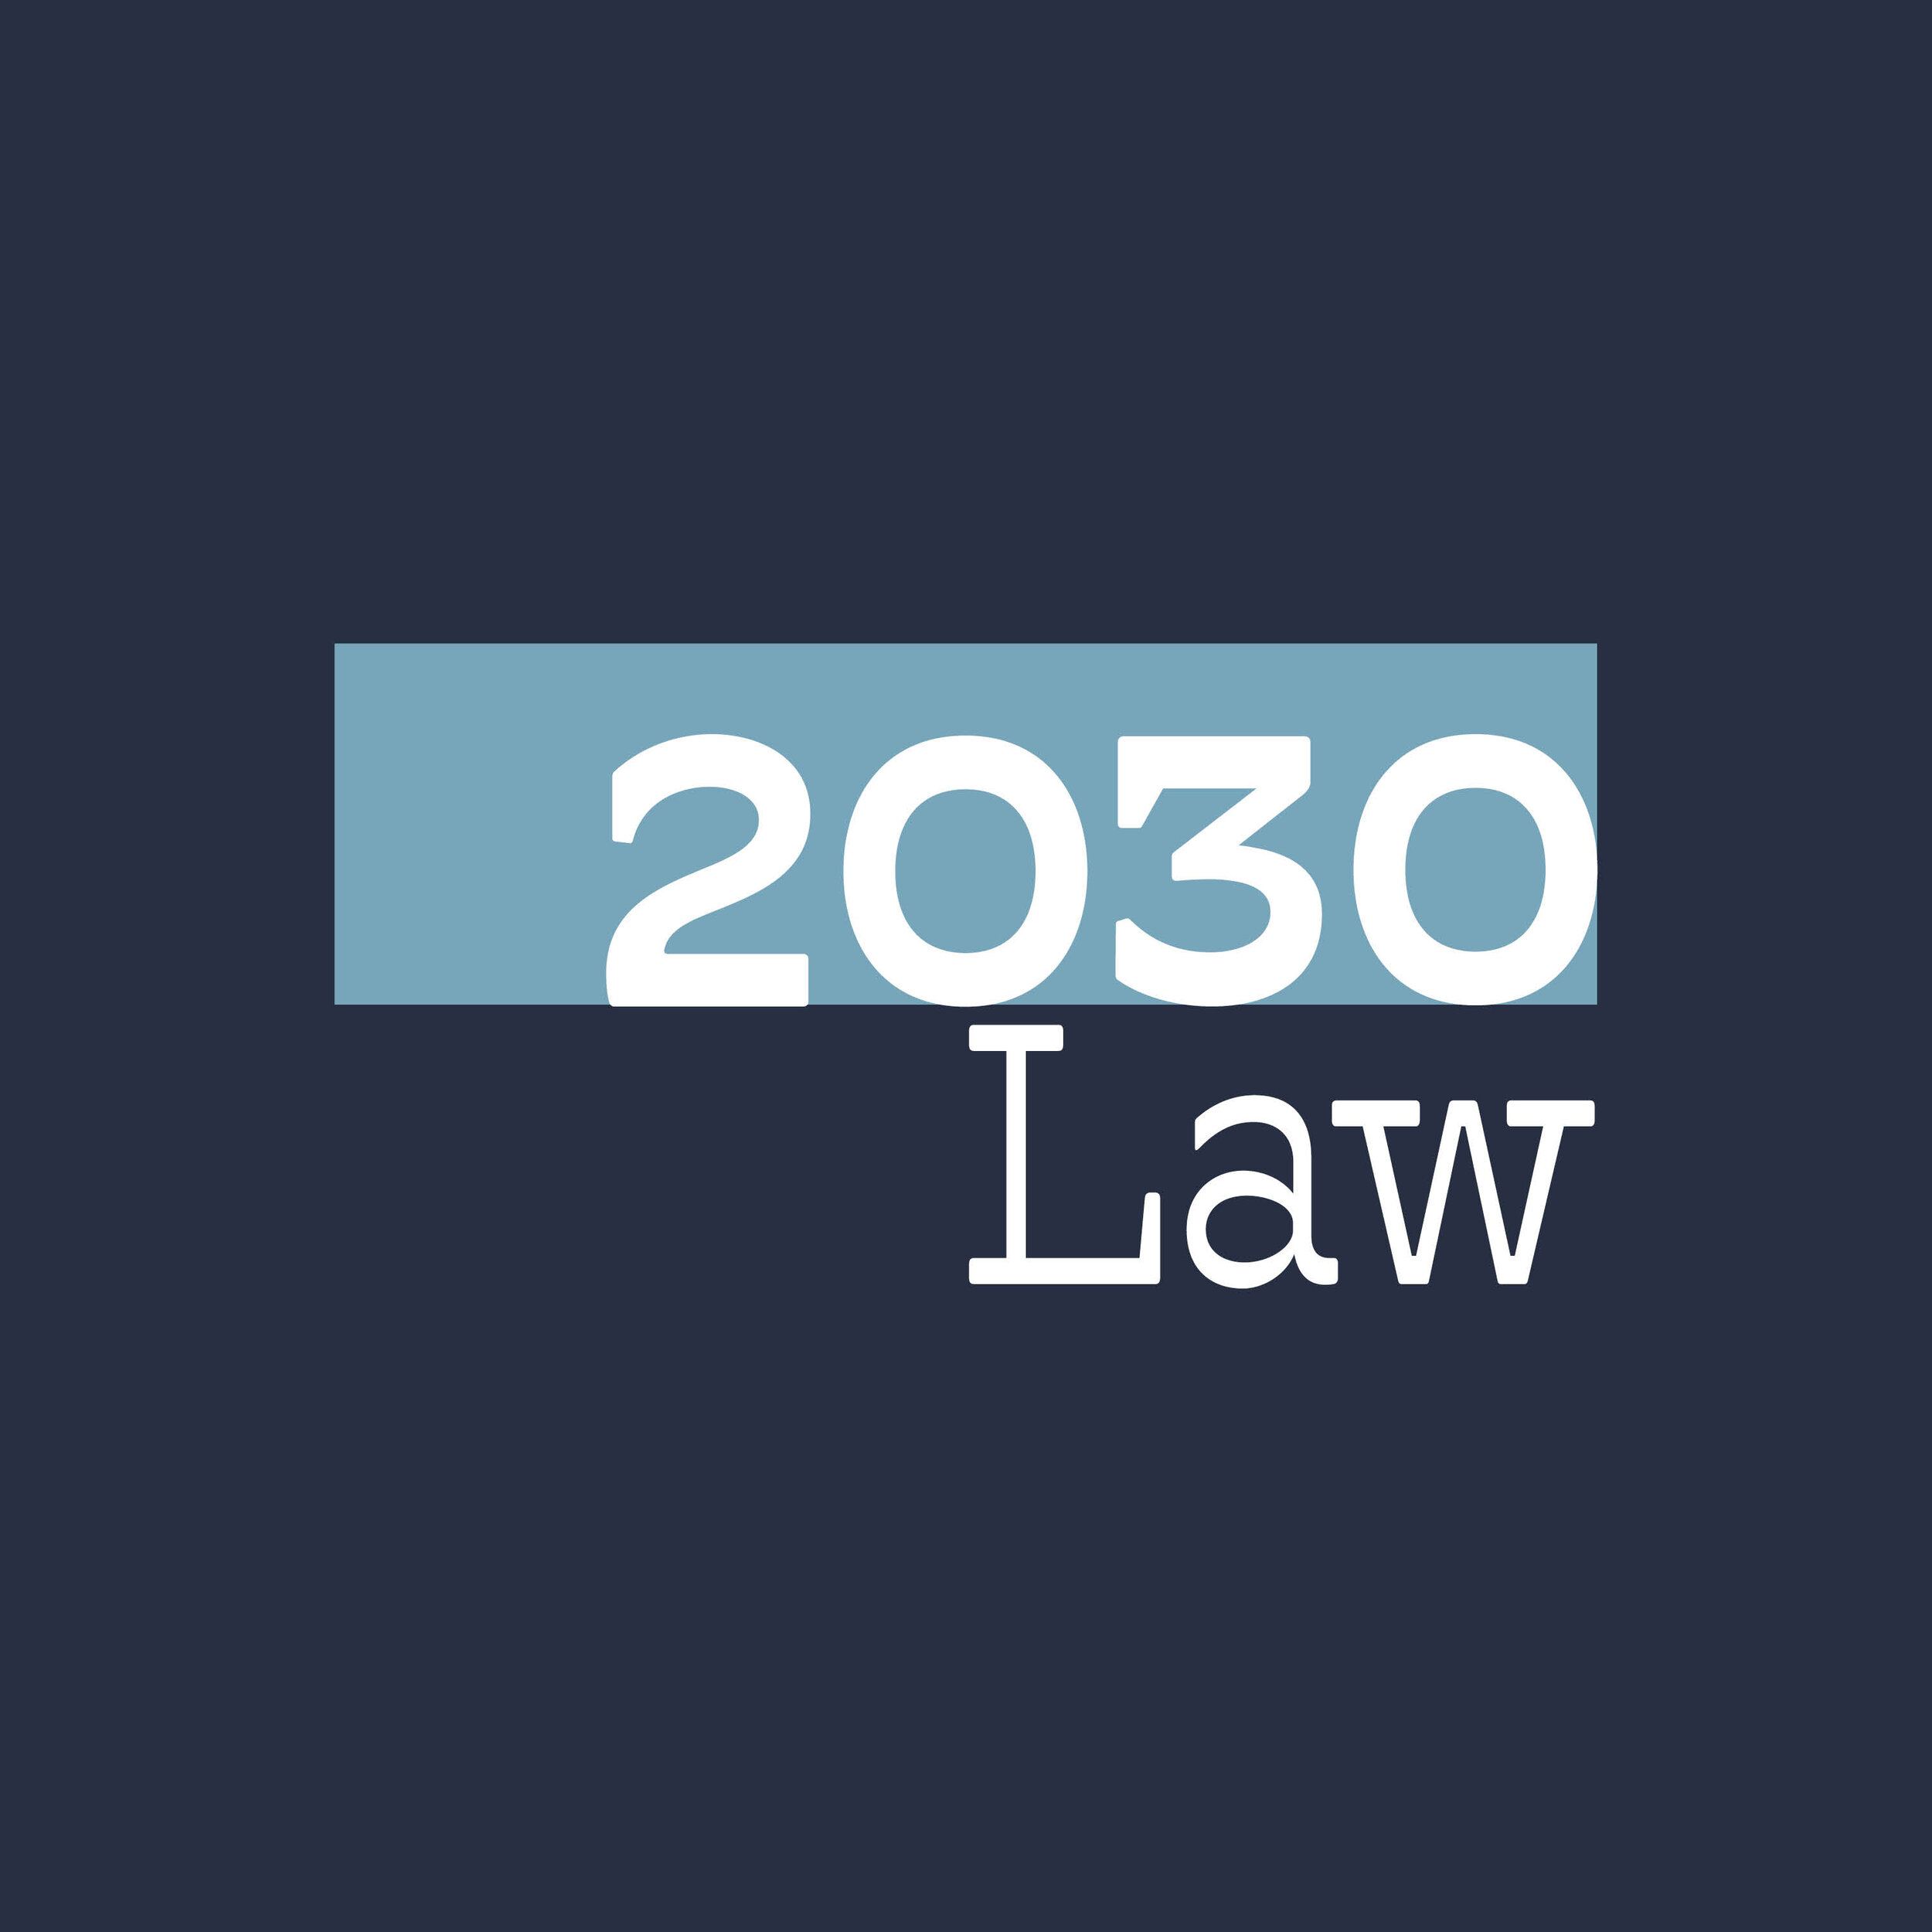 2030 law.jpg